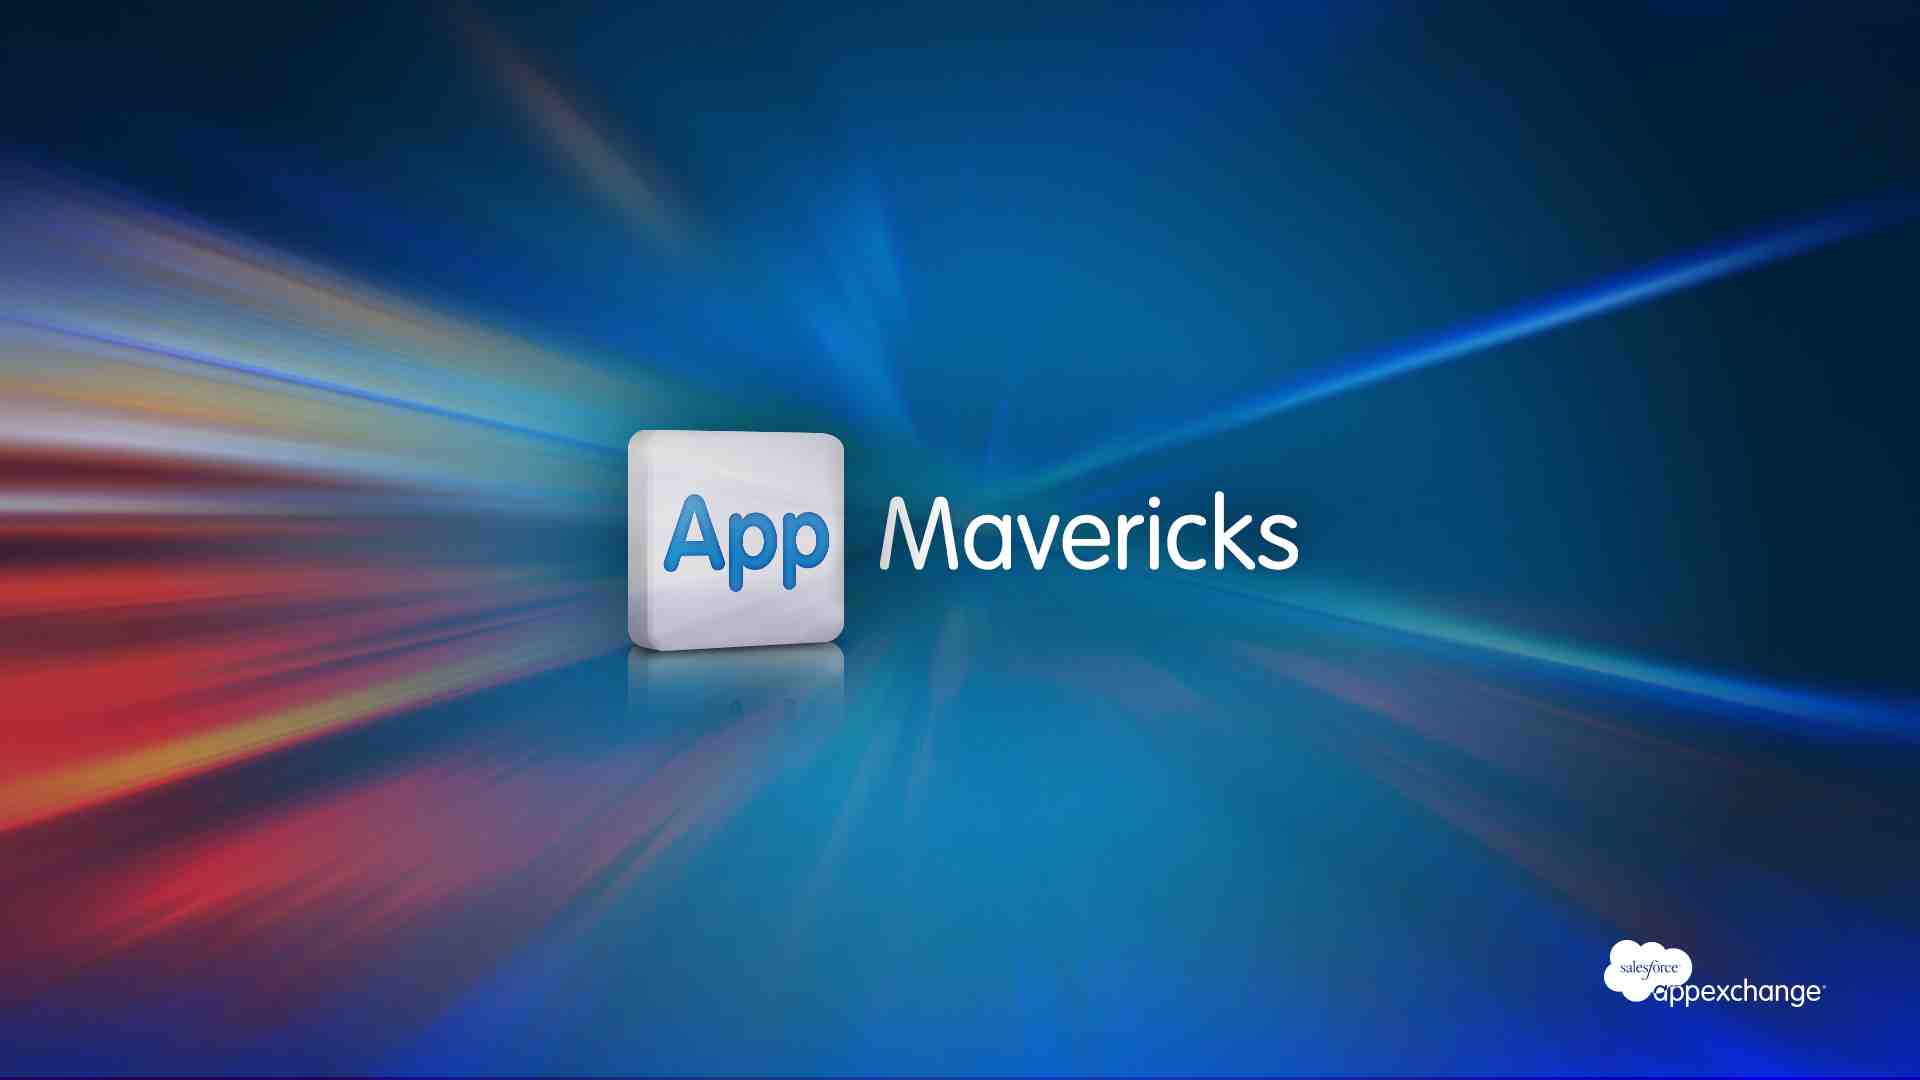 App Mavericks, Ep. 5: Shell Black and John Lankes on the Location-Aware "Check-in" App